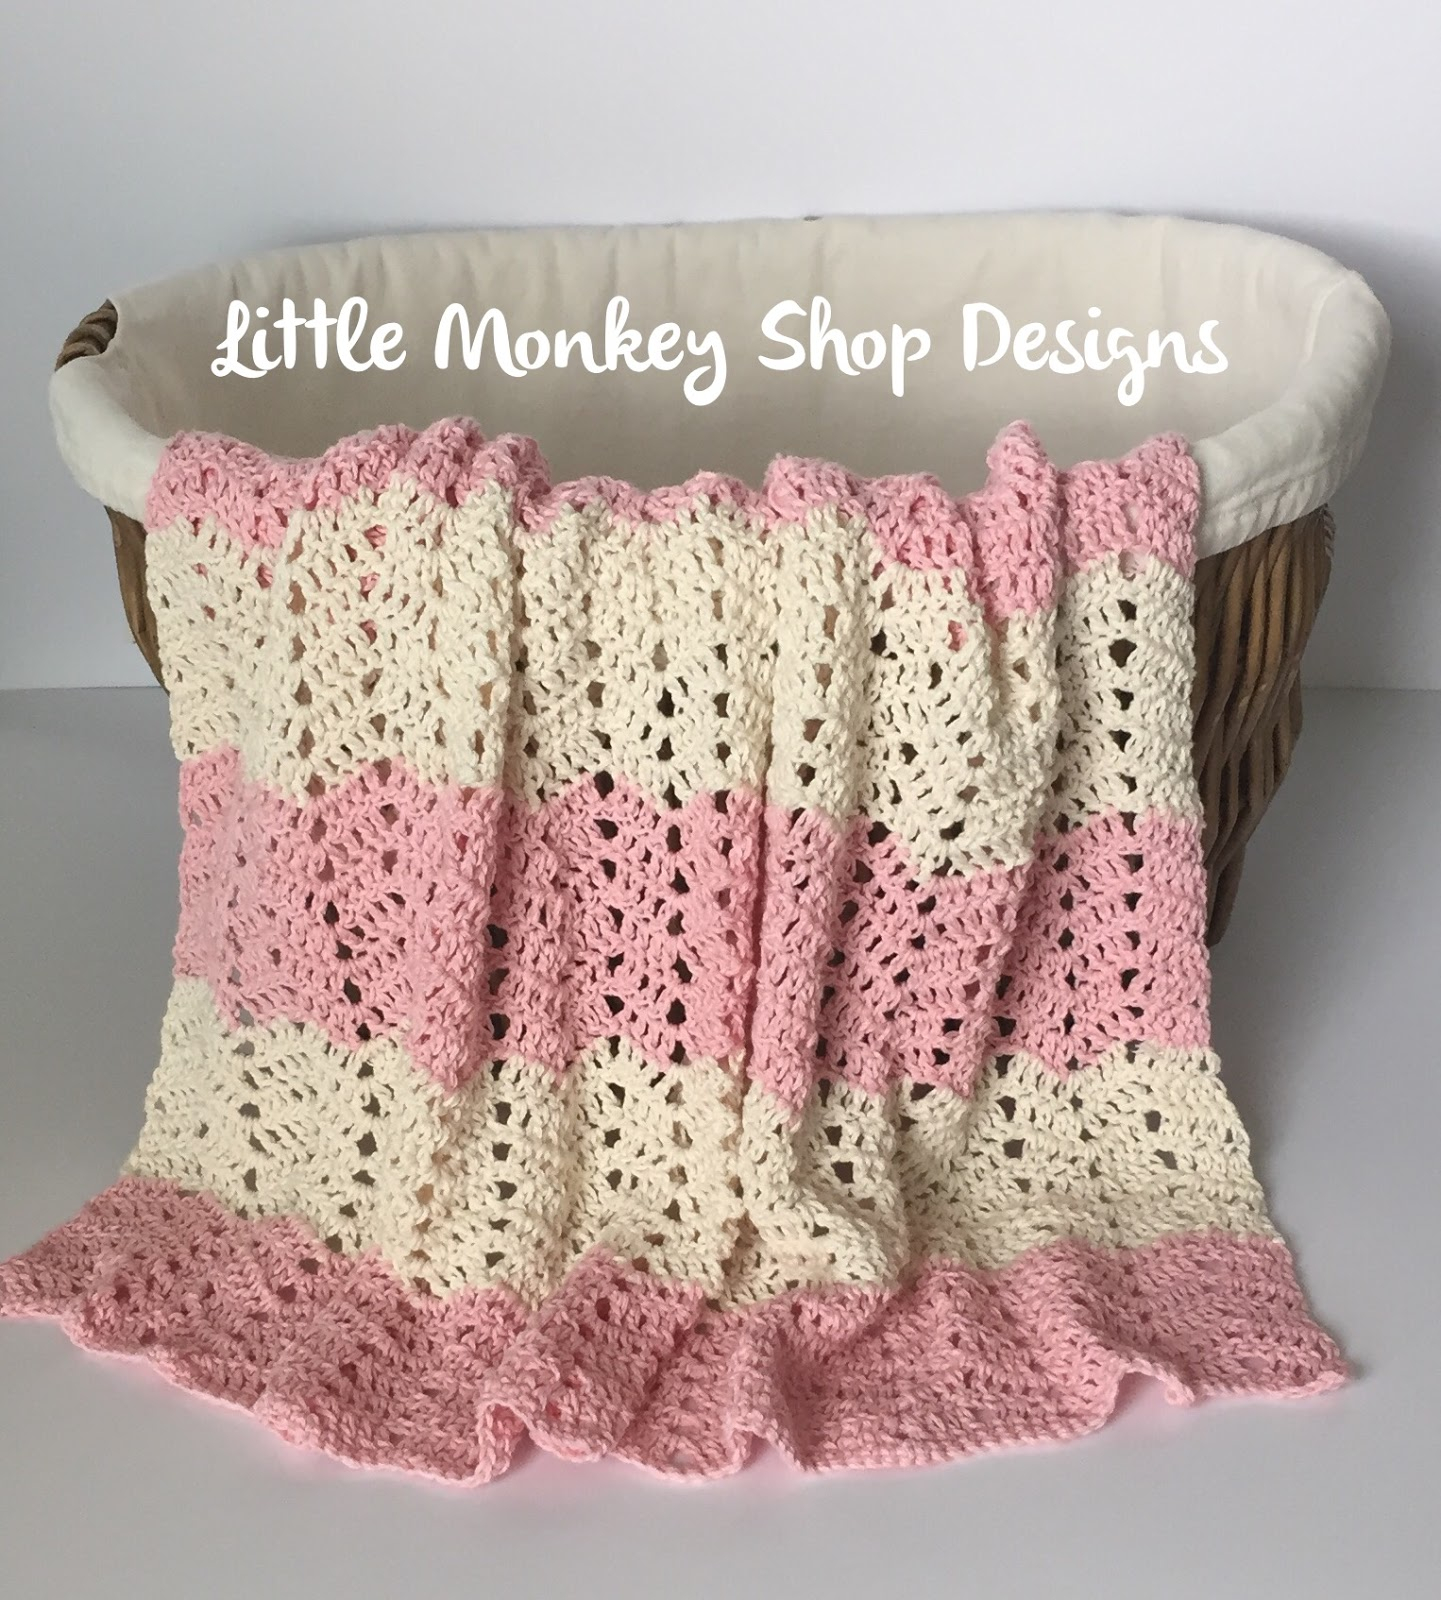 Crochet Patterns Baby Blankets Peek A Boo Chevron Crochet Ba Blanket Design Little Monkey Shop